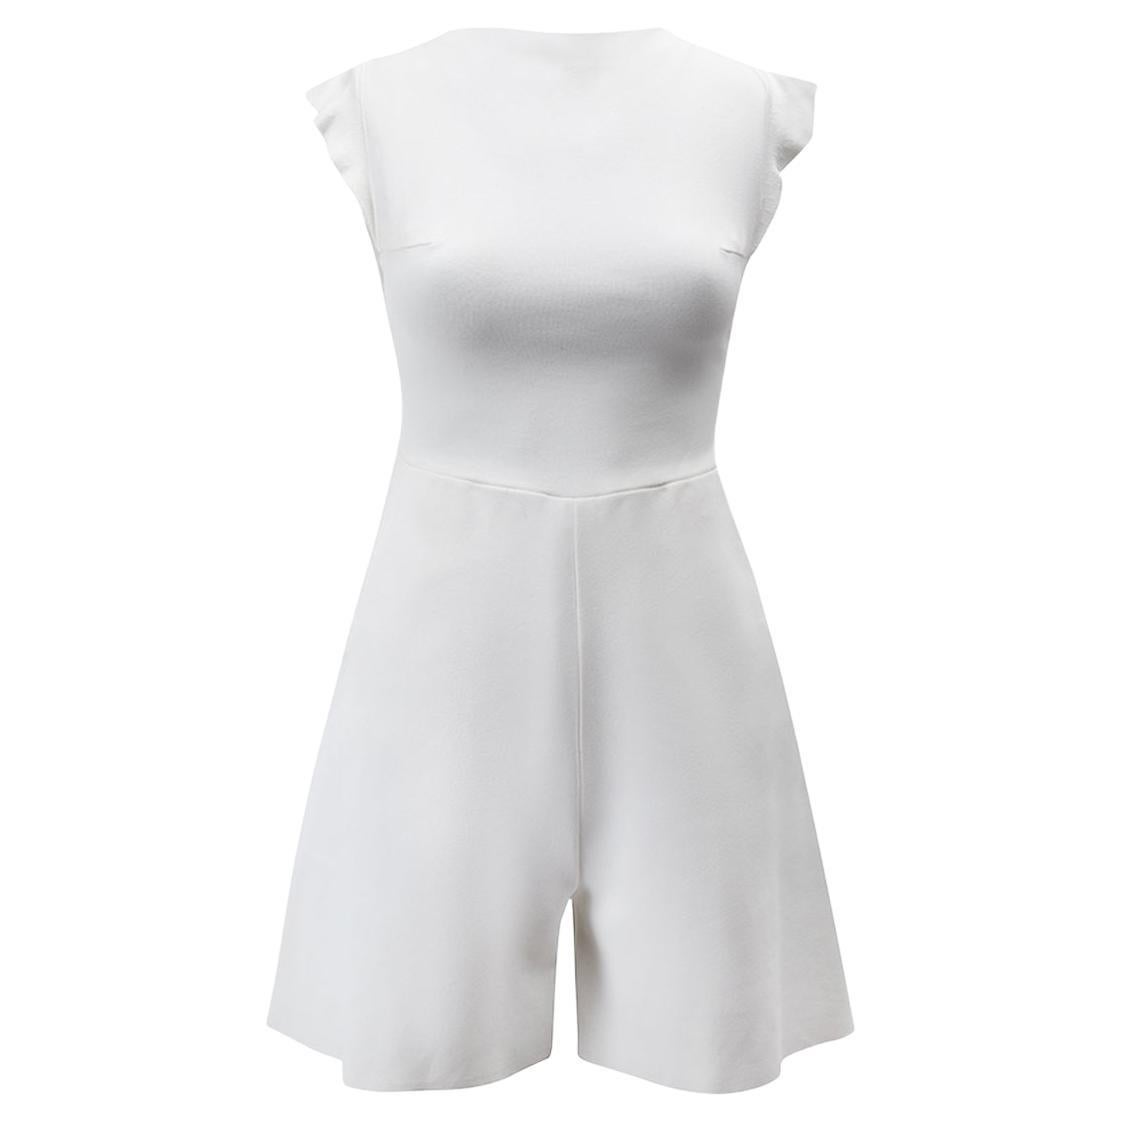 Valentino Women's White Ruffle Short Sleeve Playsuit